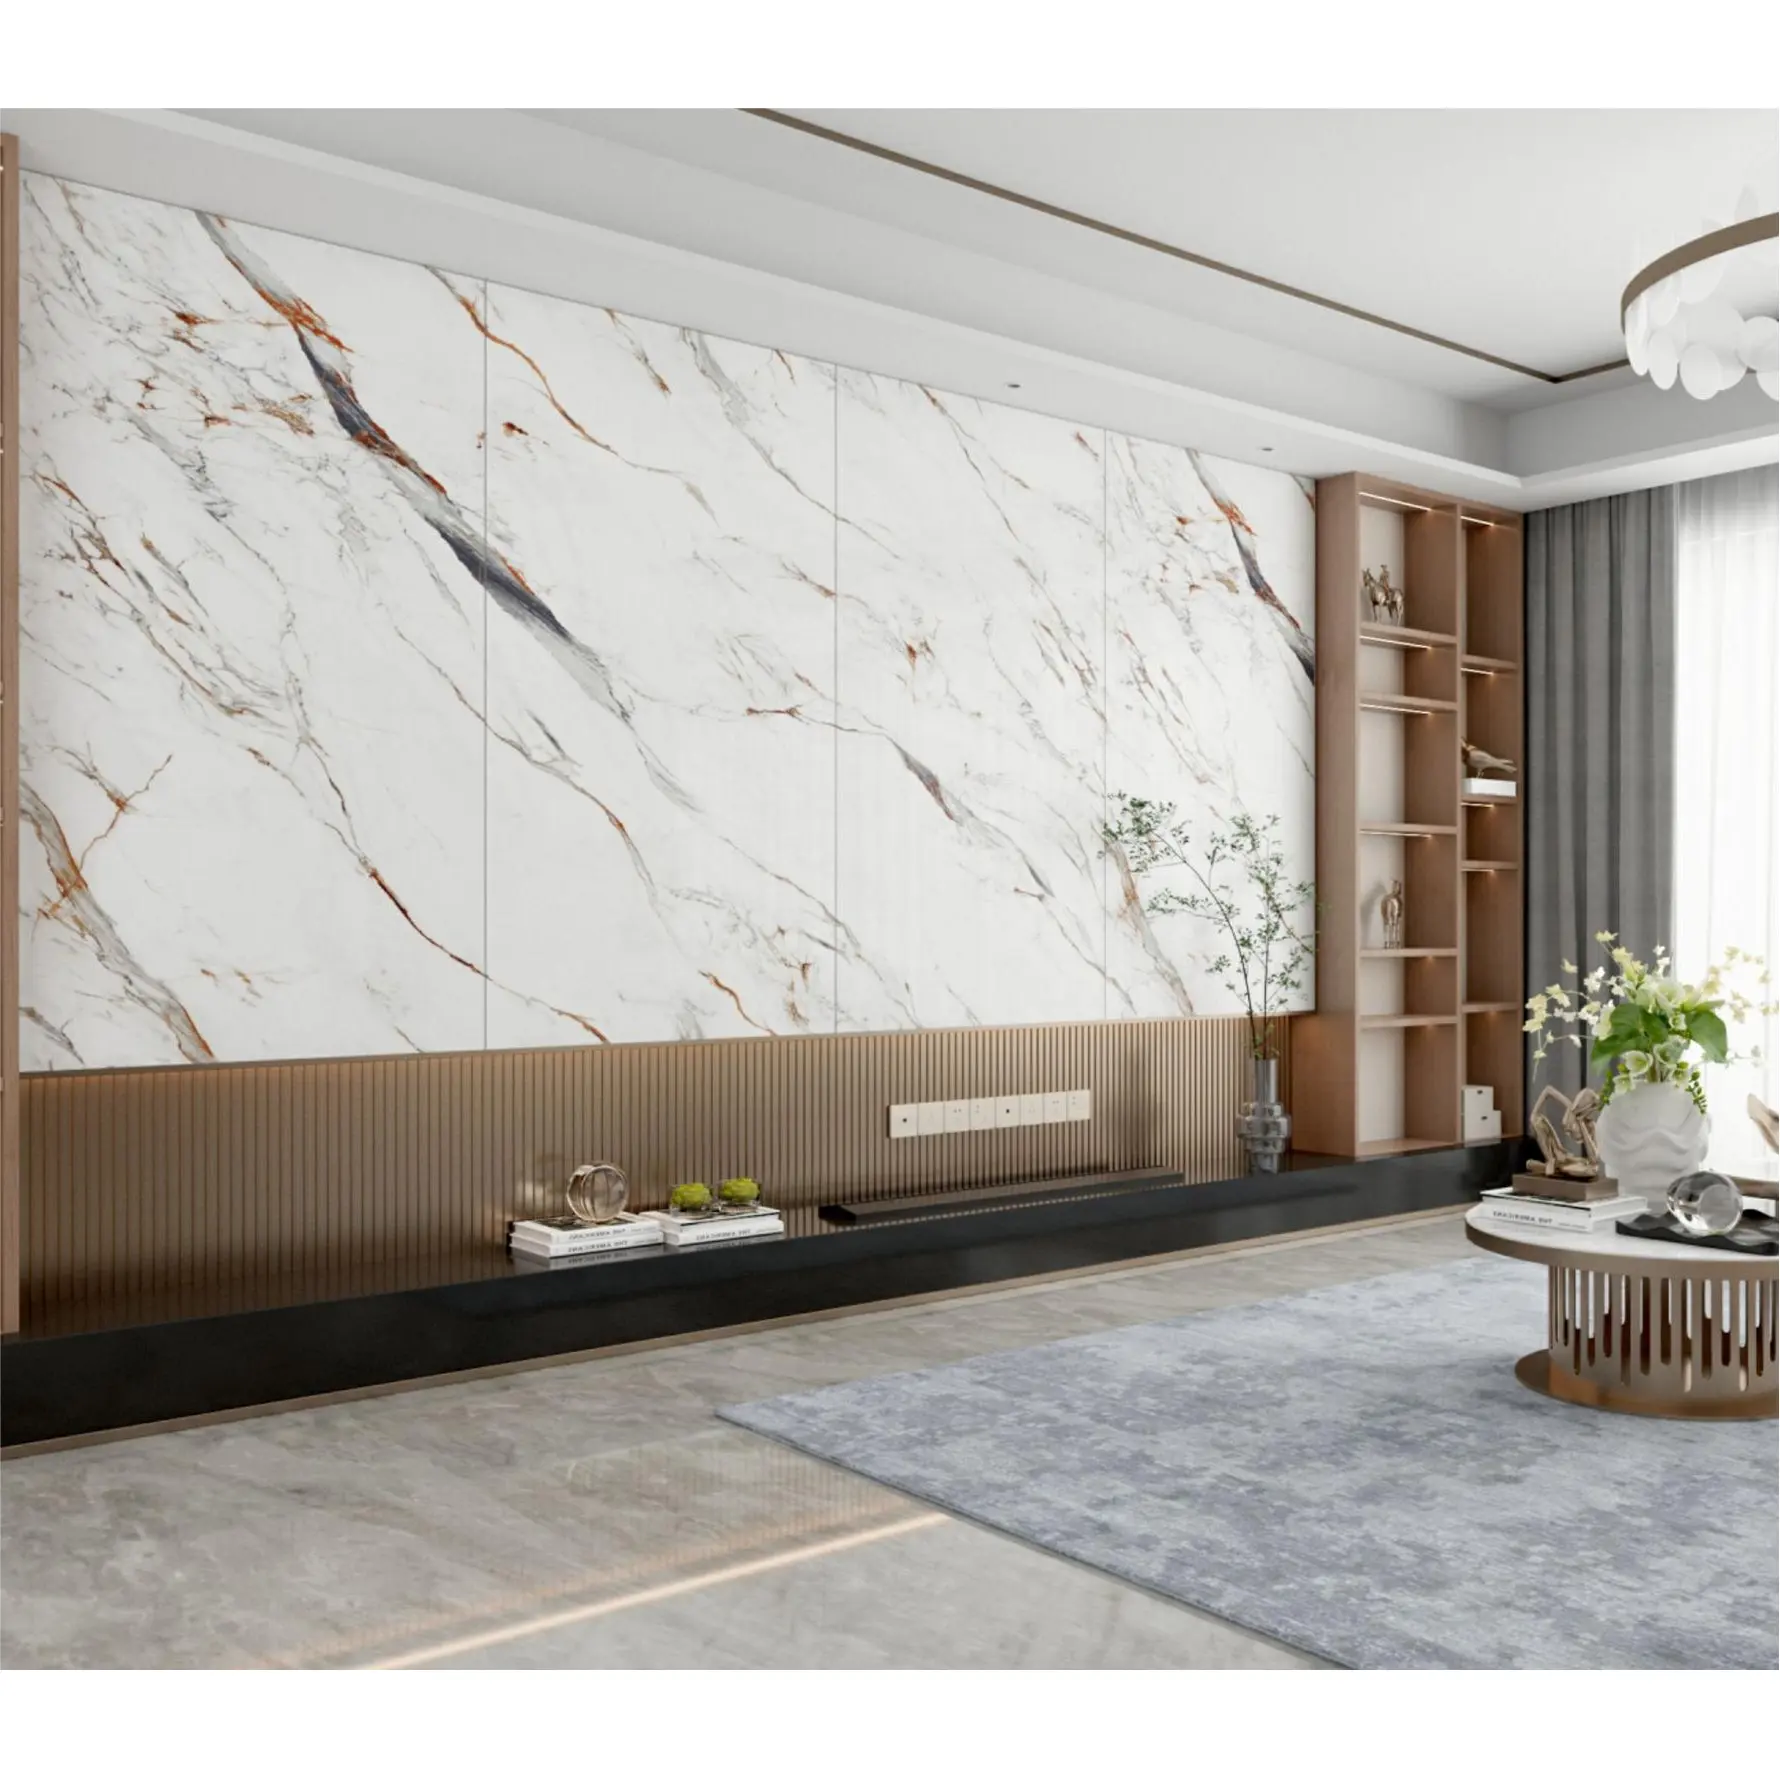 Giá rẻ sang trọng gạch 900x1800 mét Trắng Carrara Slate slab TV Backdrop gạch đánh bóng sàn gạch đá cẩm thạch sứ slab cho tường